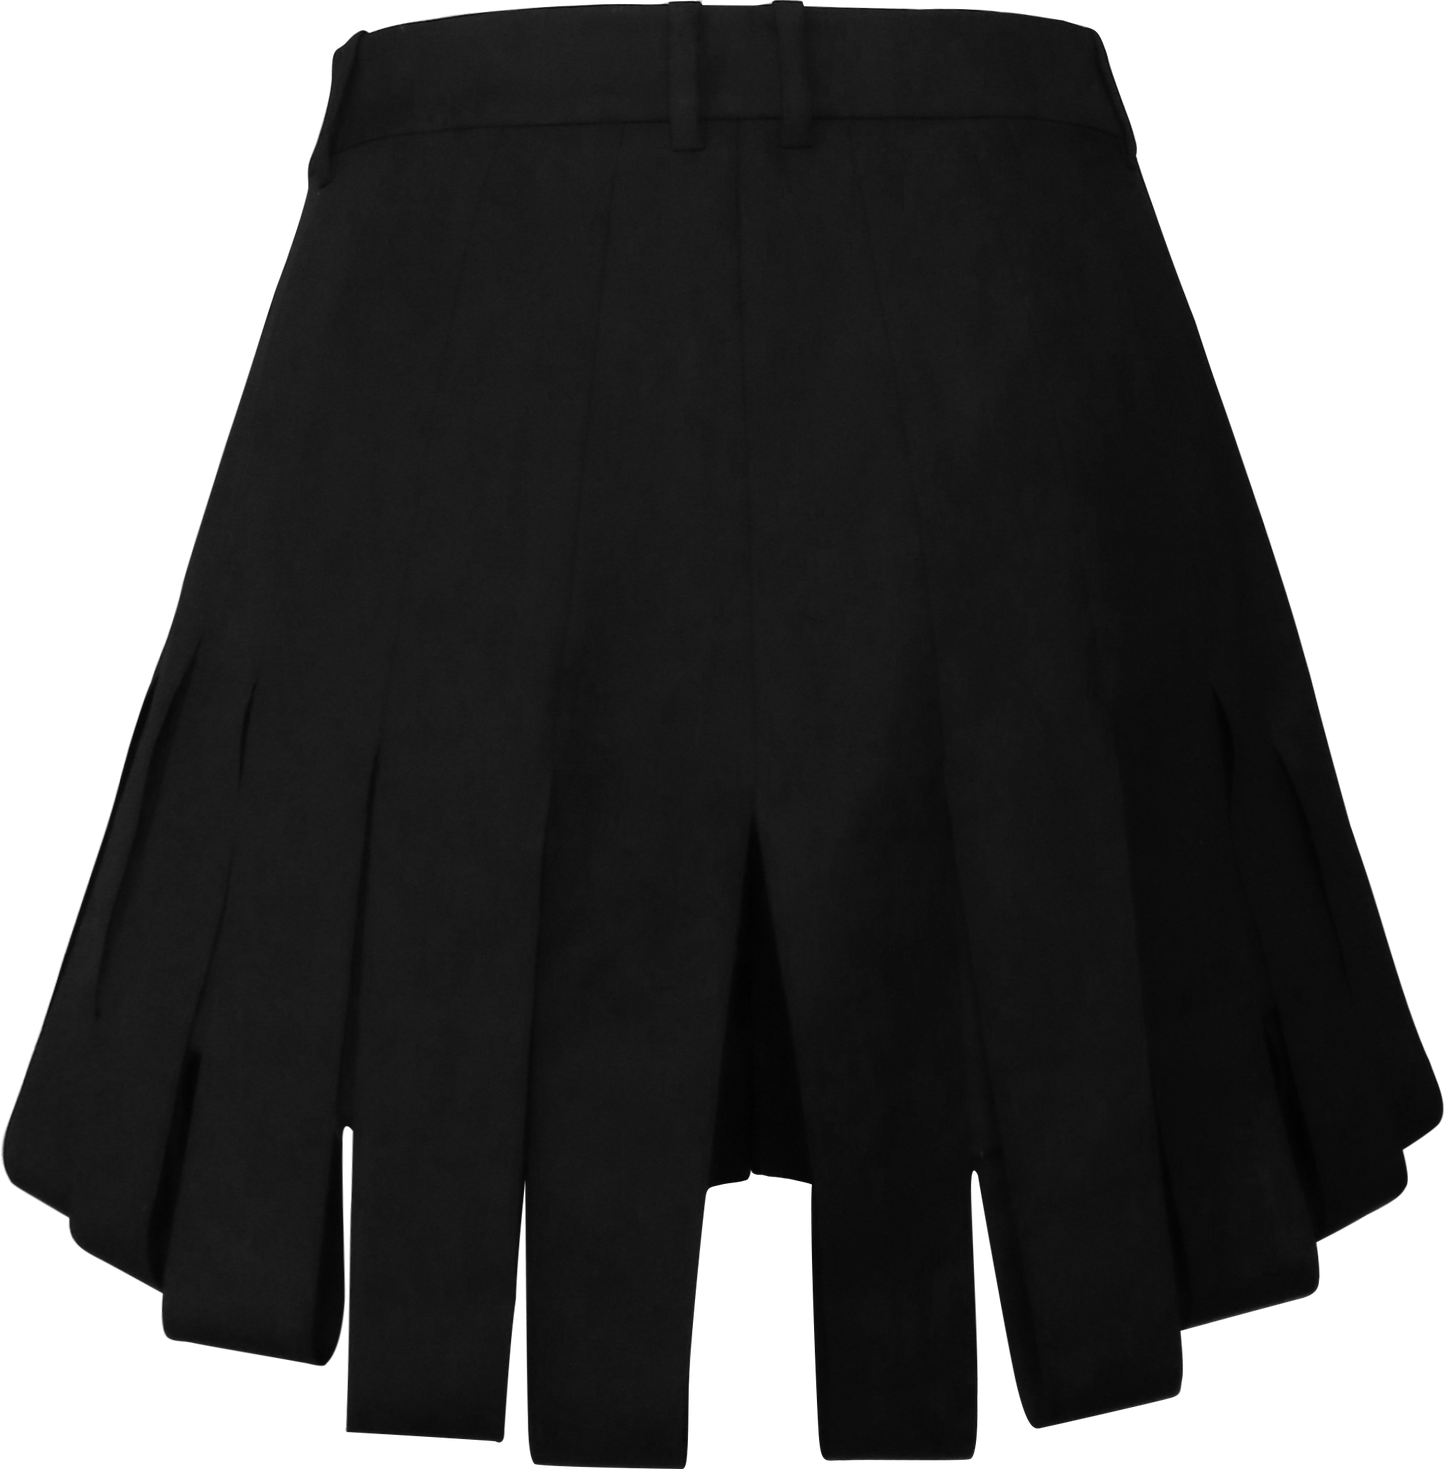 Irregular Split Short Skirt Pants